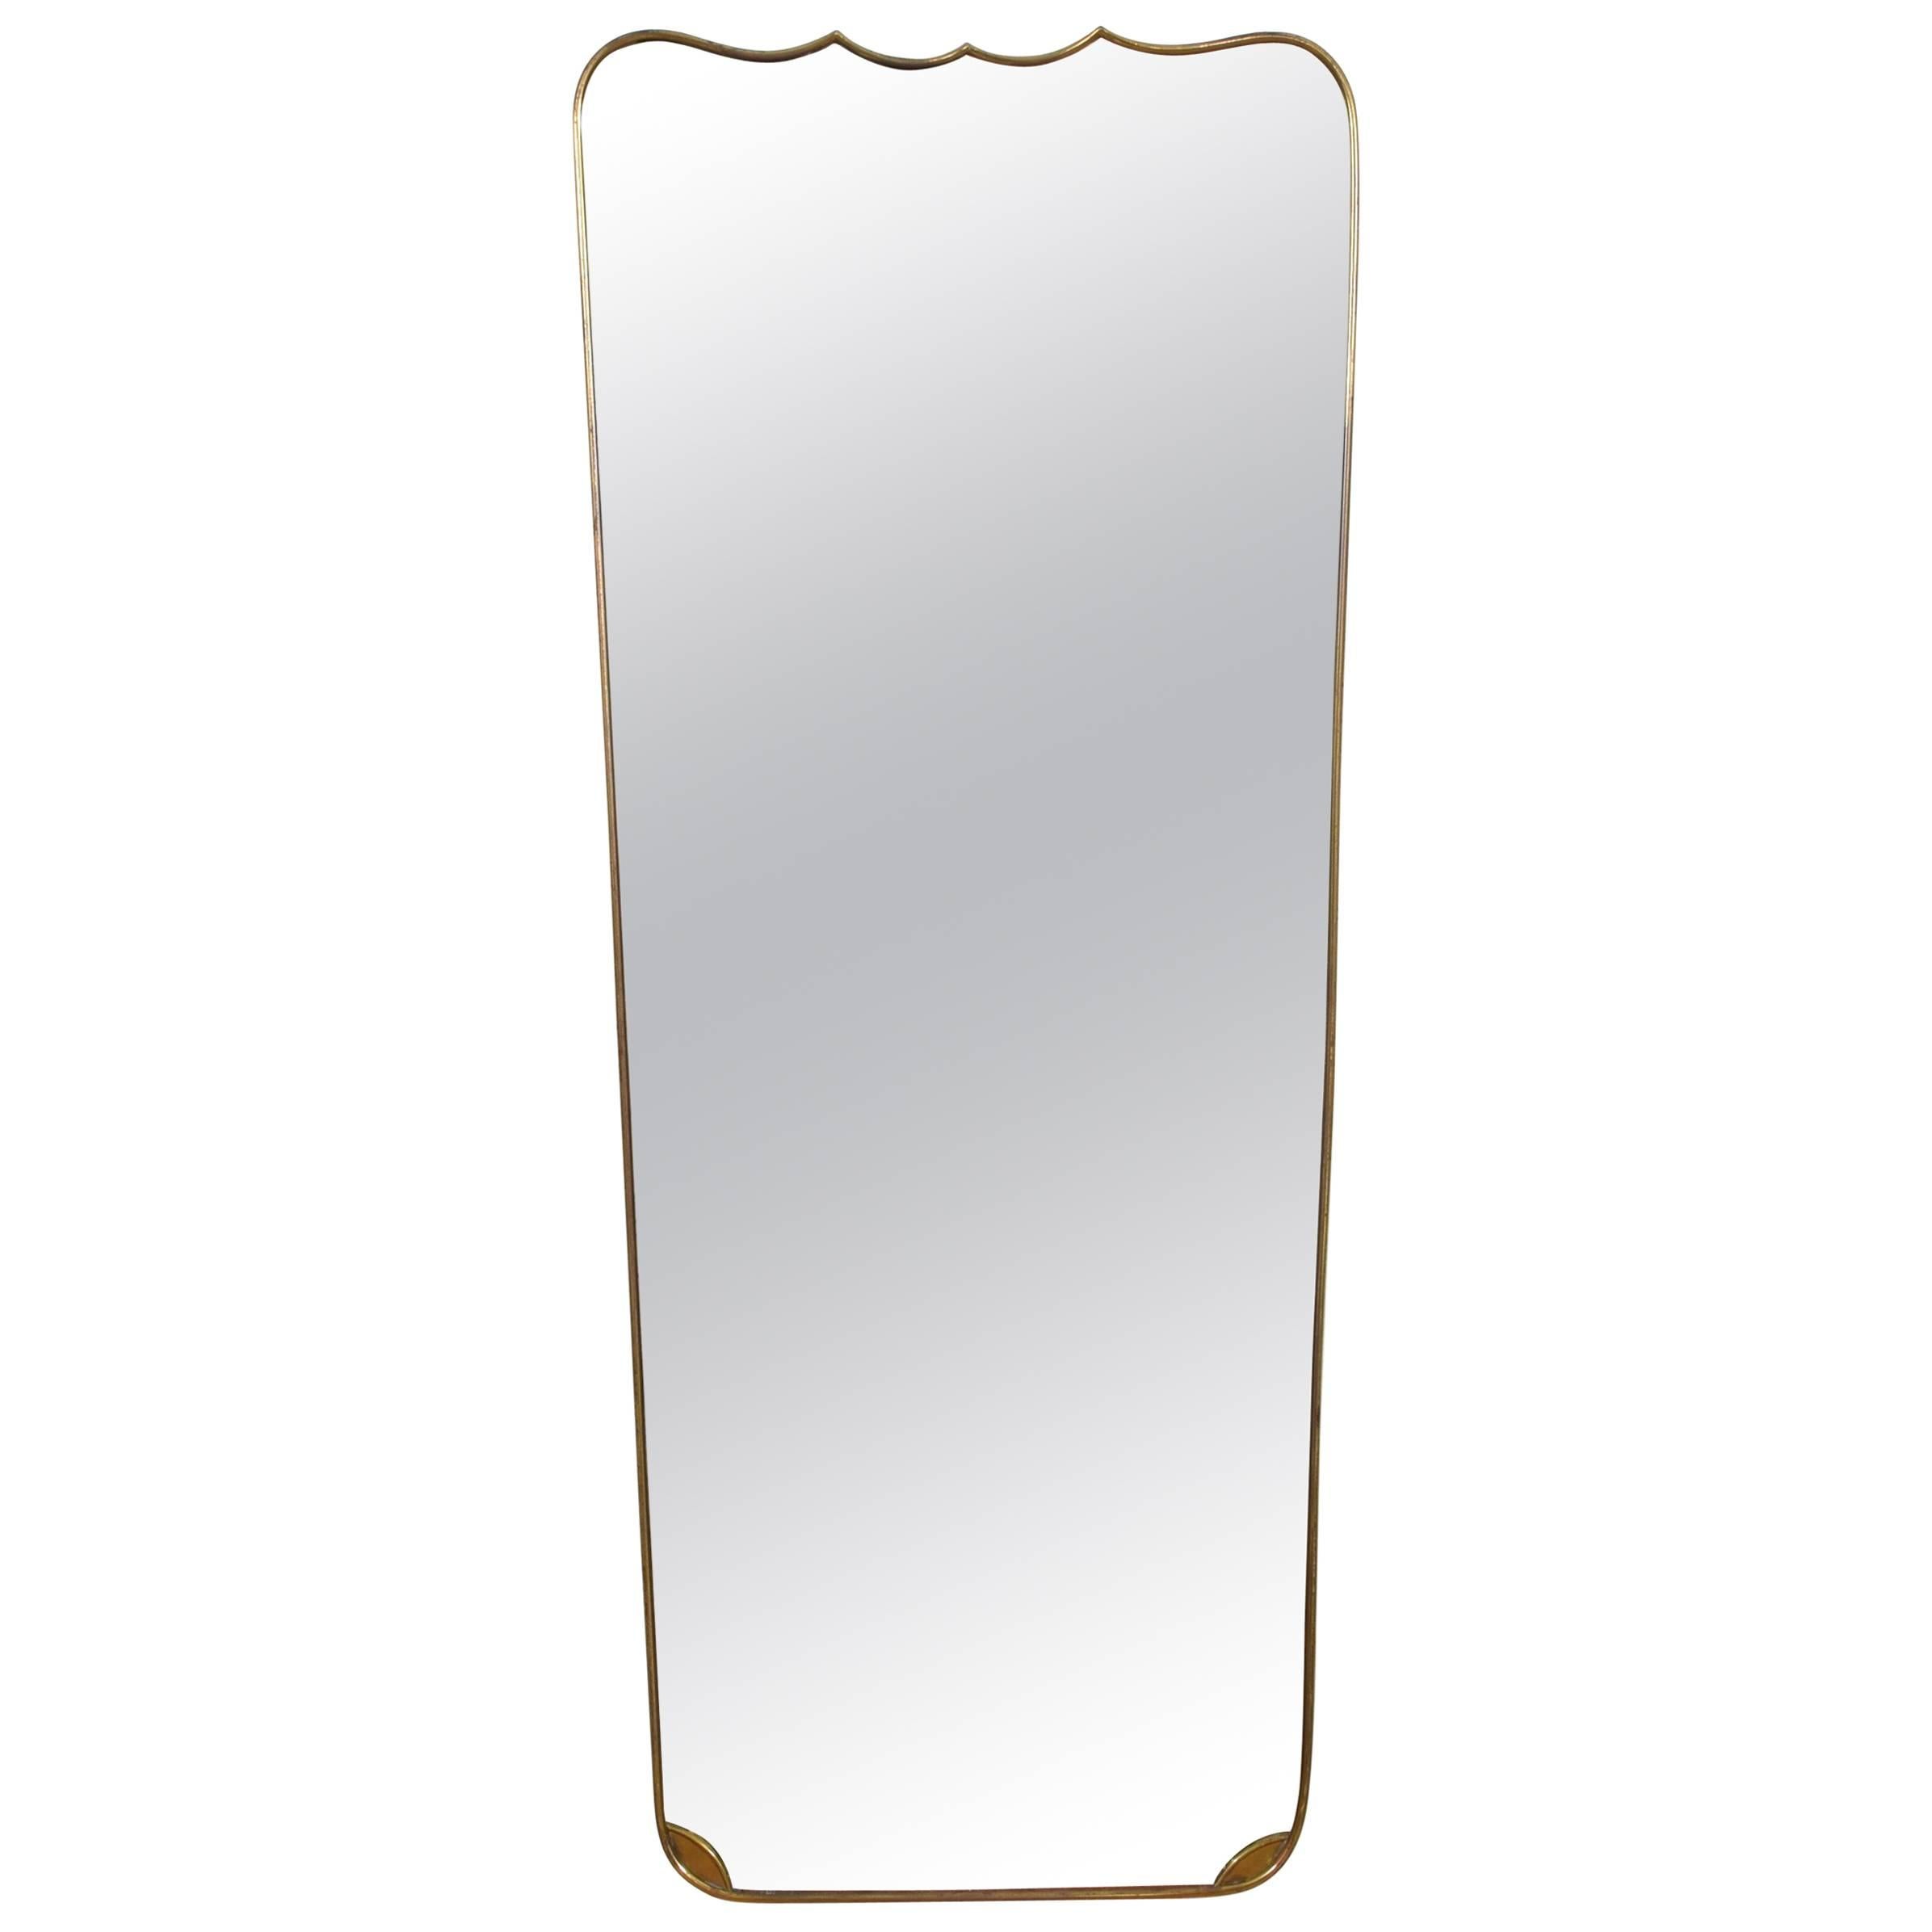 Italian Mid-20th Century Brass Mirror